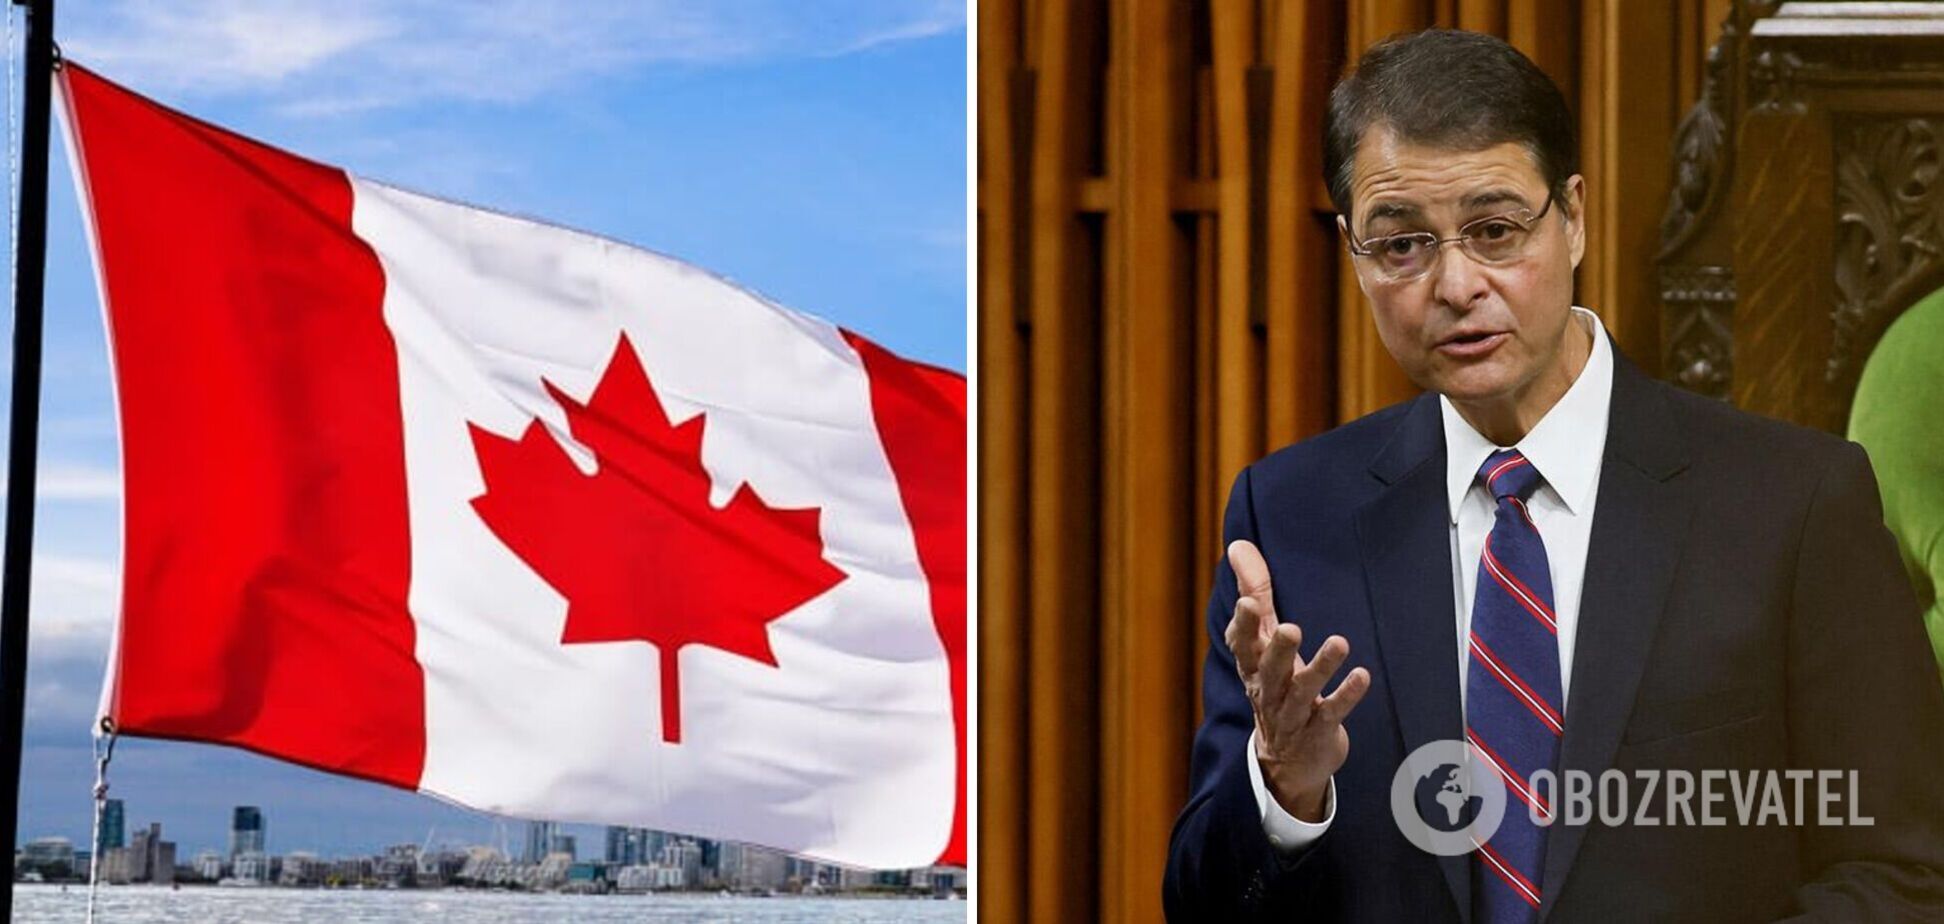 Спикер парламента Канады ушел в отставку на фоне скандала с приглашением ветерана СС 'Галичина' на выступление Зеленского: подробности